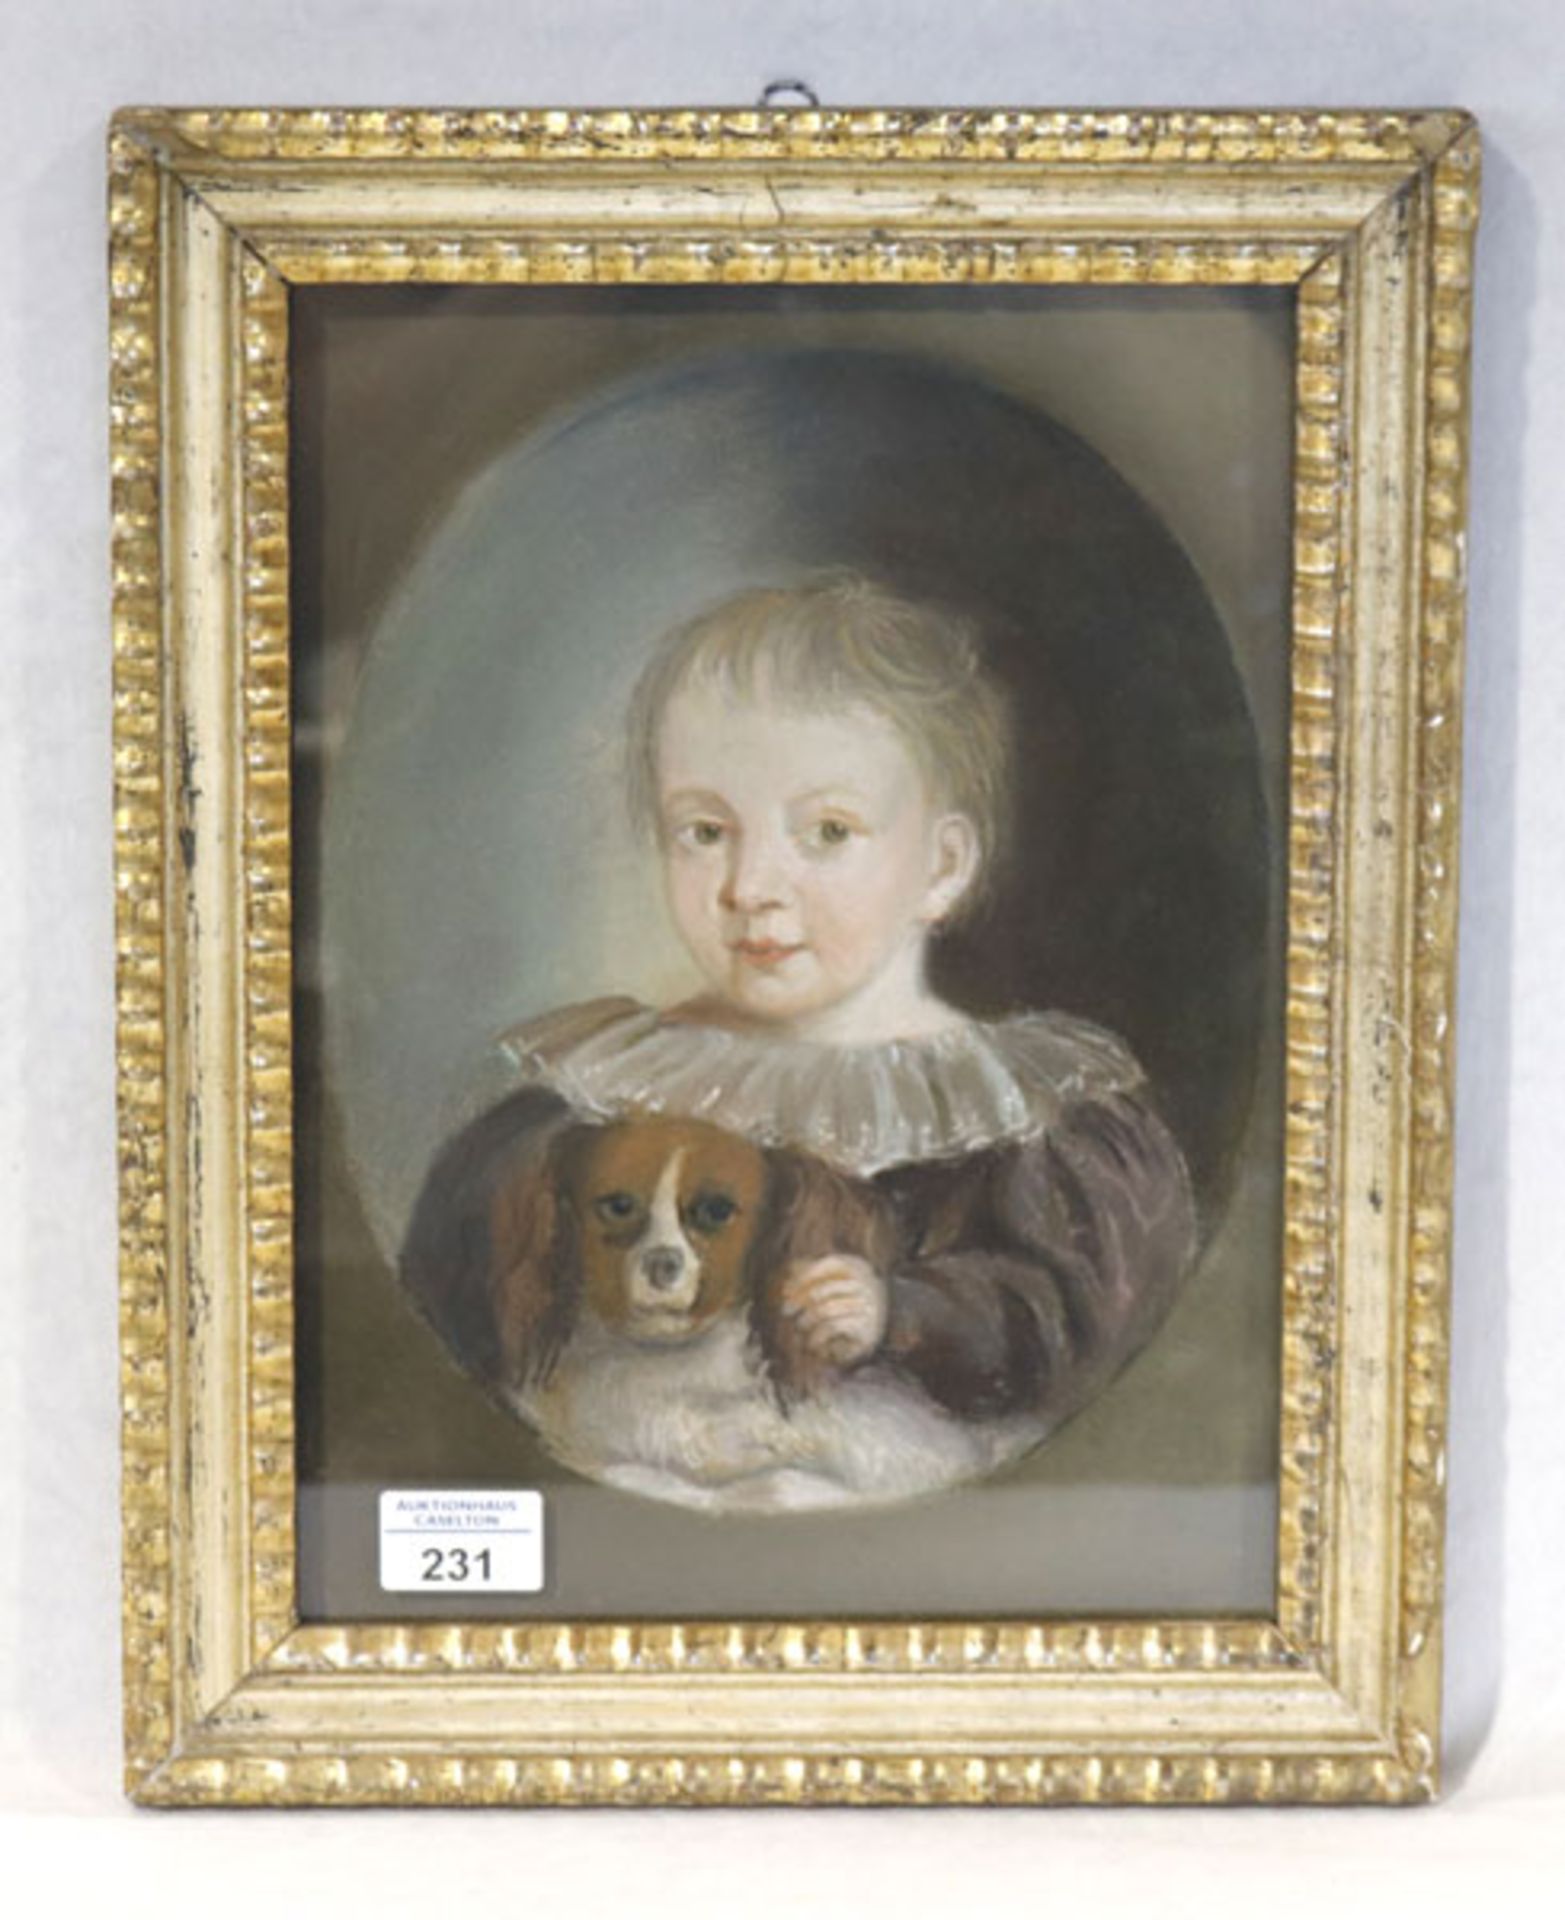 Gemälde Pastell 'Kind mit Hund', bez. Copie n. Rothe Erlangen, unter Glas gerahmt, Rahmen